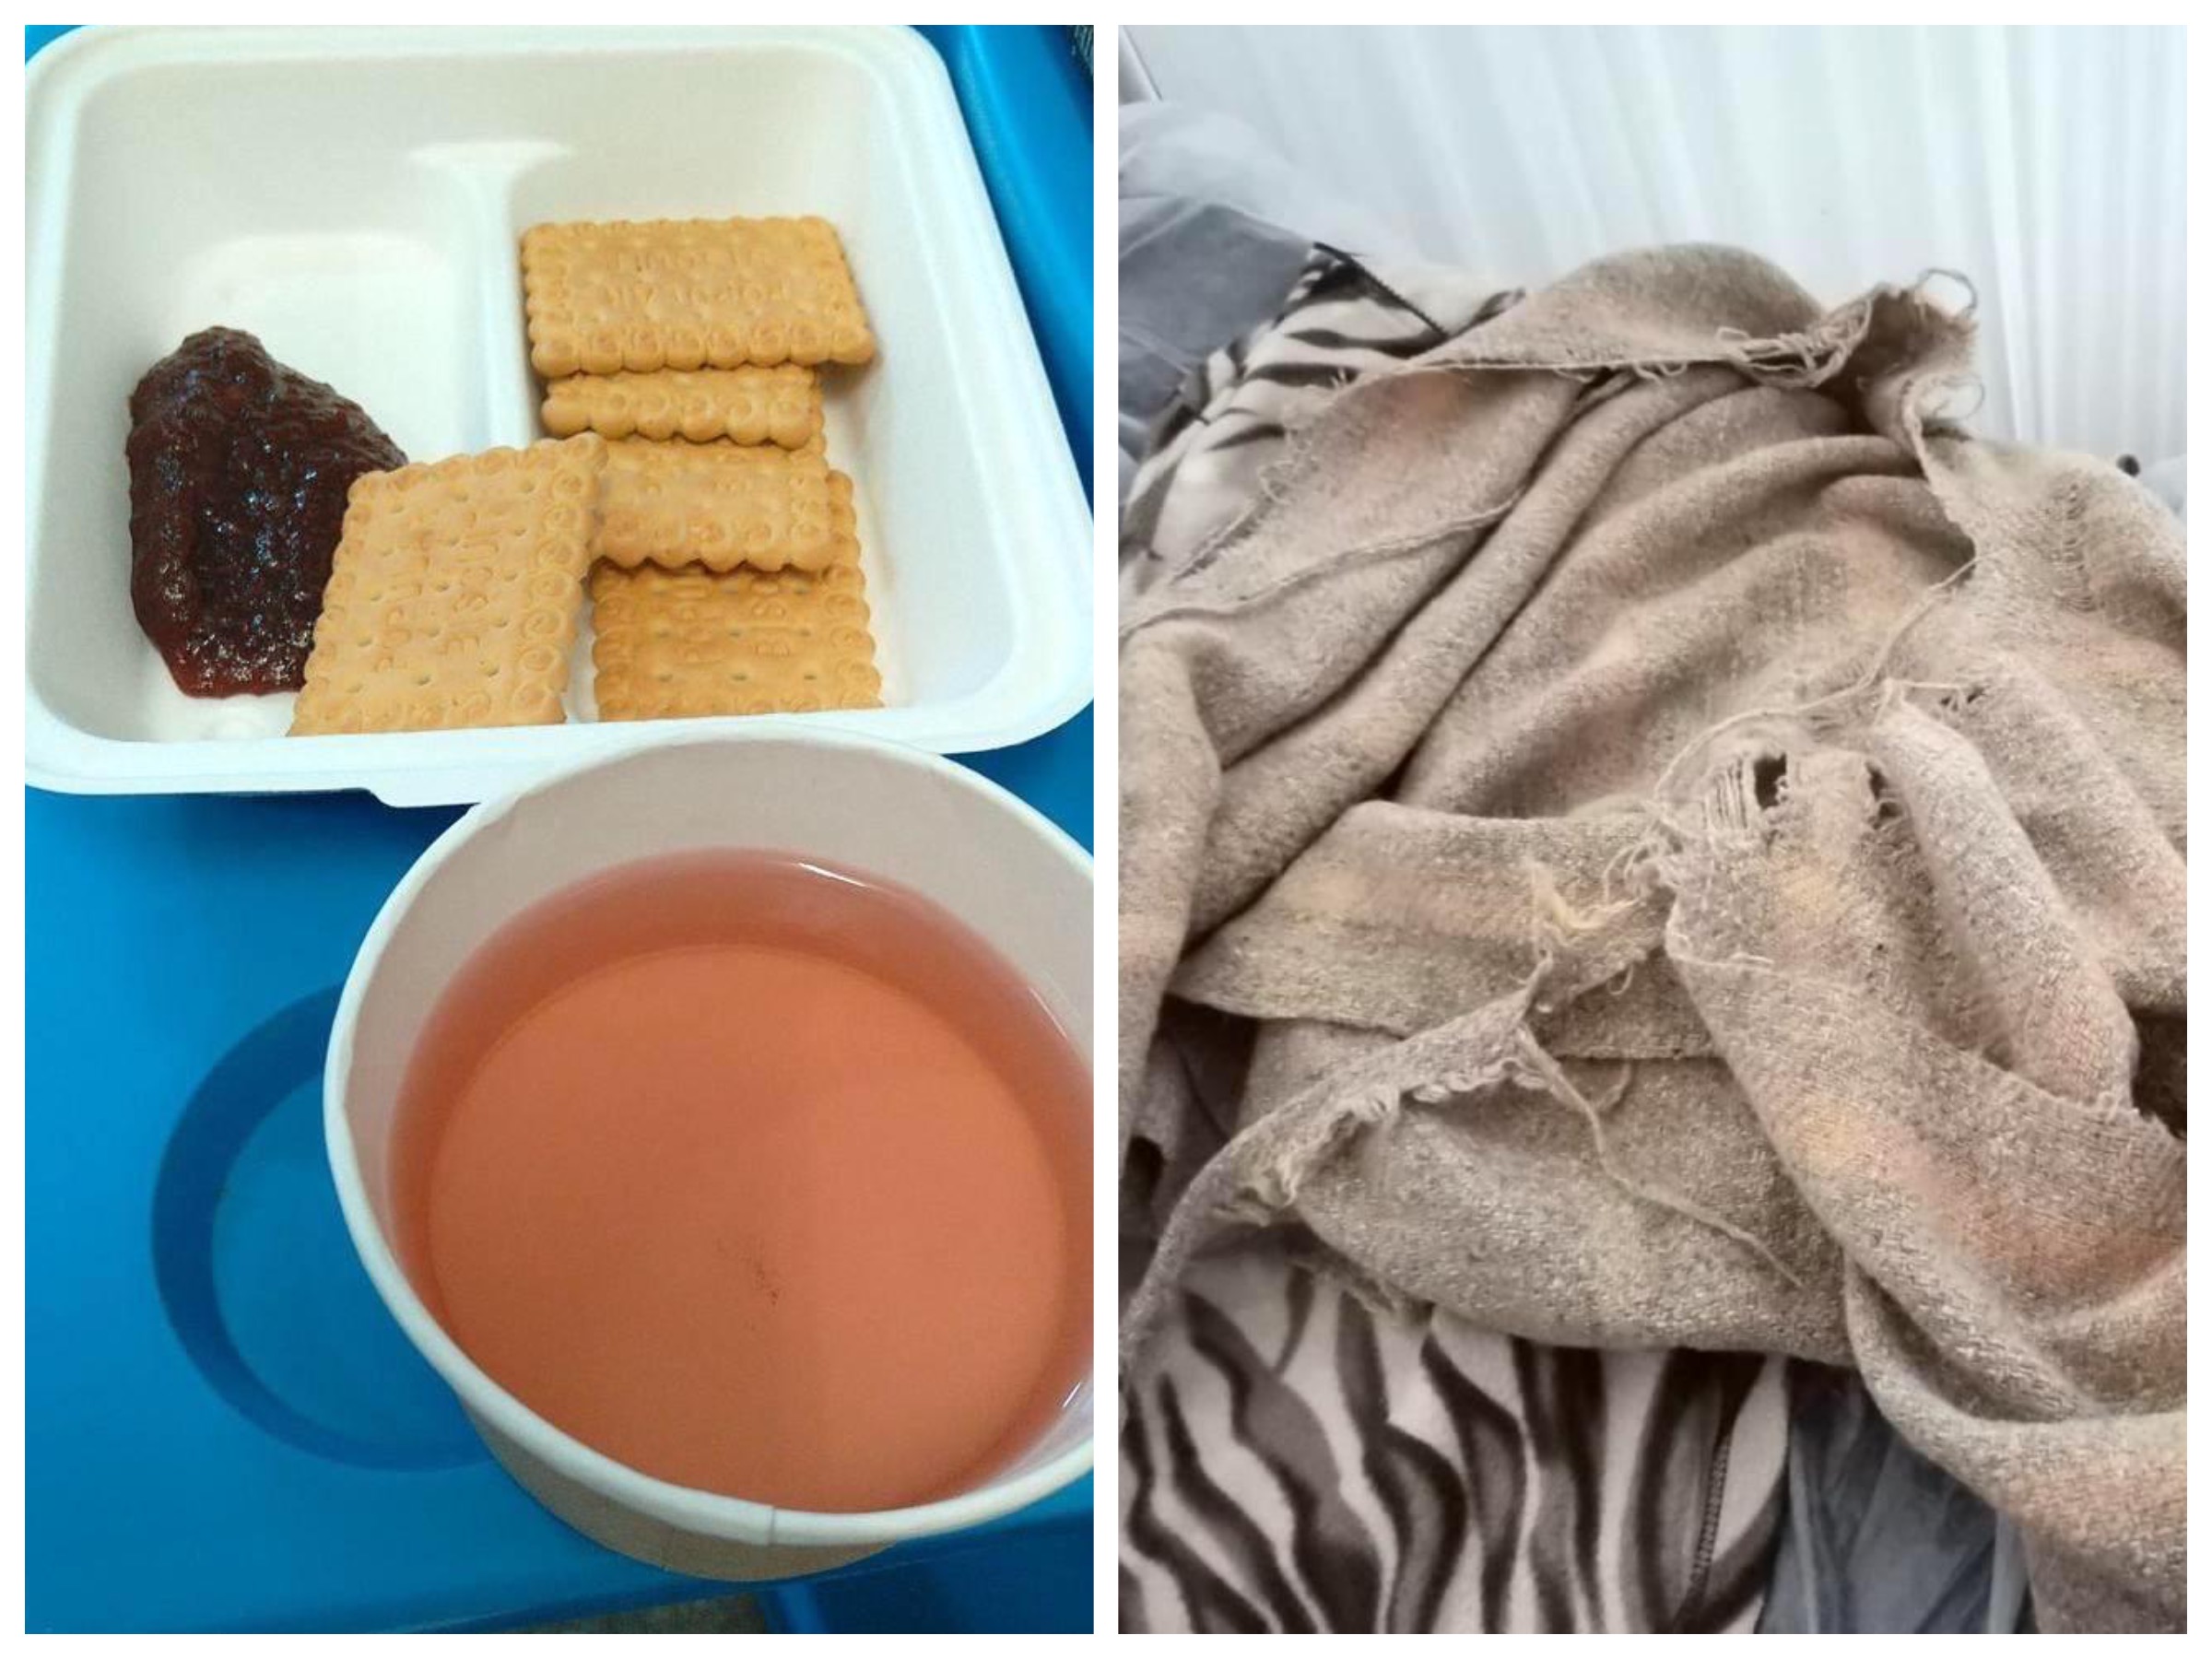 Pături rupte, cinci biscuiți cu marmeladă la mic dejun, lipsește apa de băut. Reclamații din Spitalul Județean Sibiu